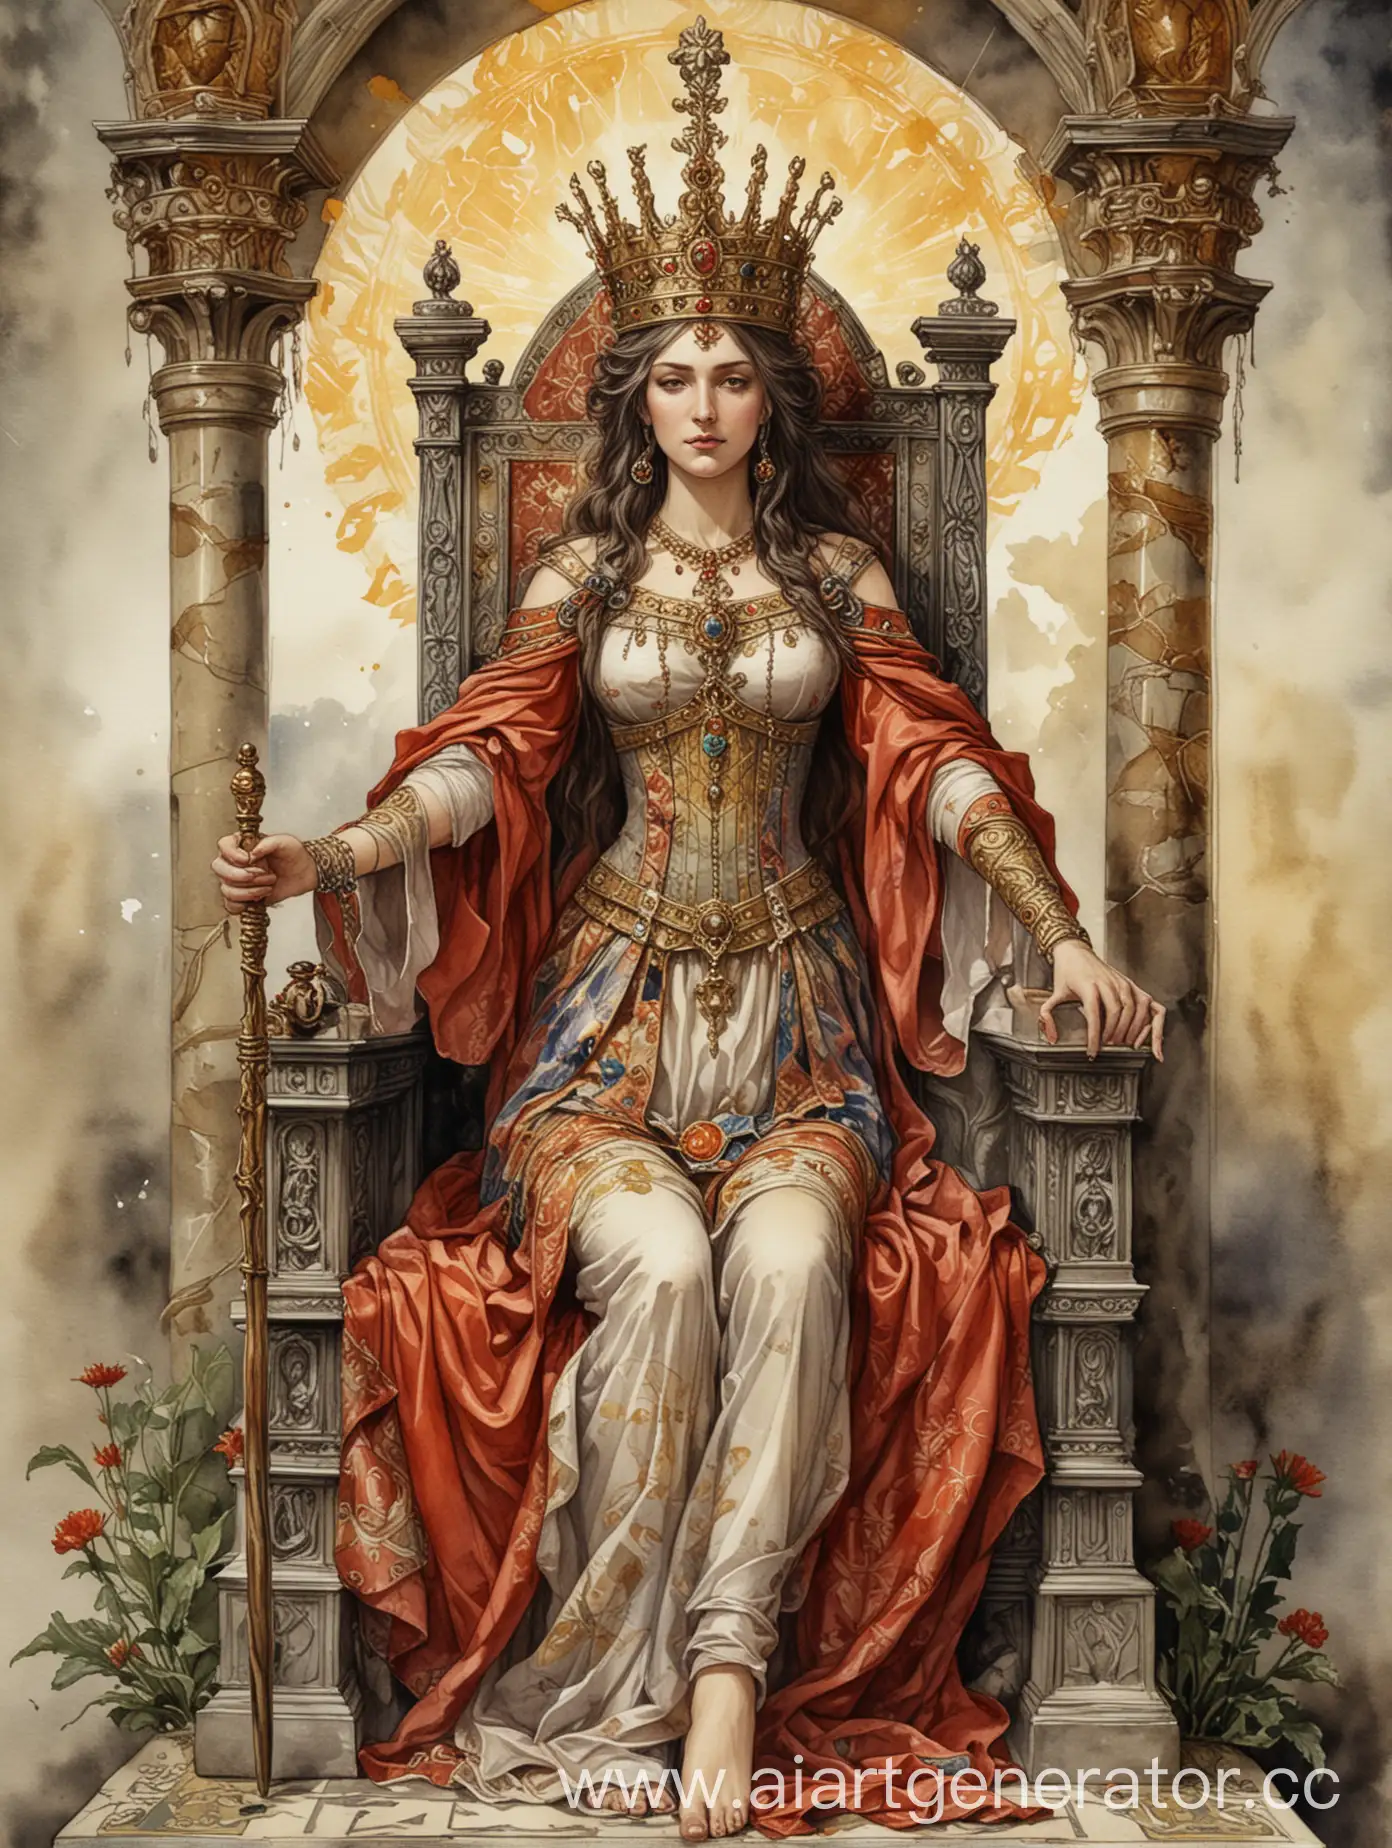 карта Таро: Аркан Императрица, акварель с максимальной детализацией; властная, сидит на троне, в руке подняла скипетр, сексуальная красавица 45 лет